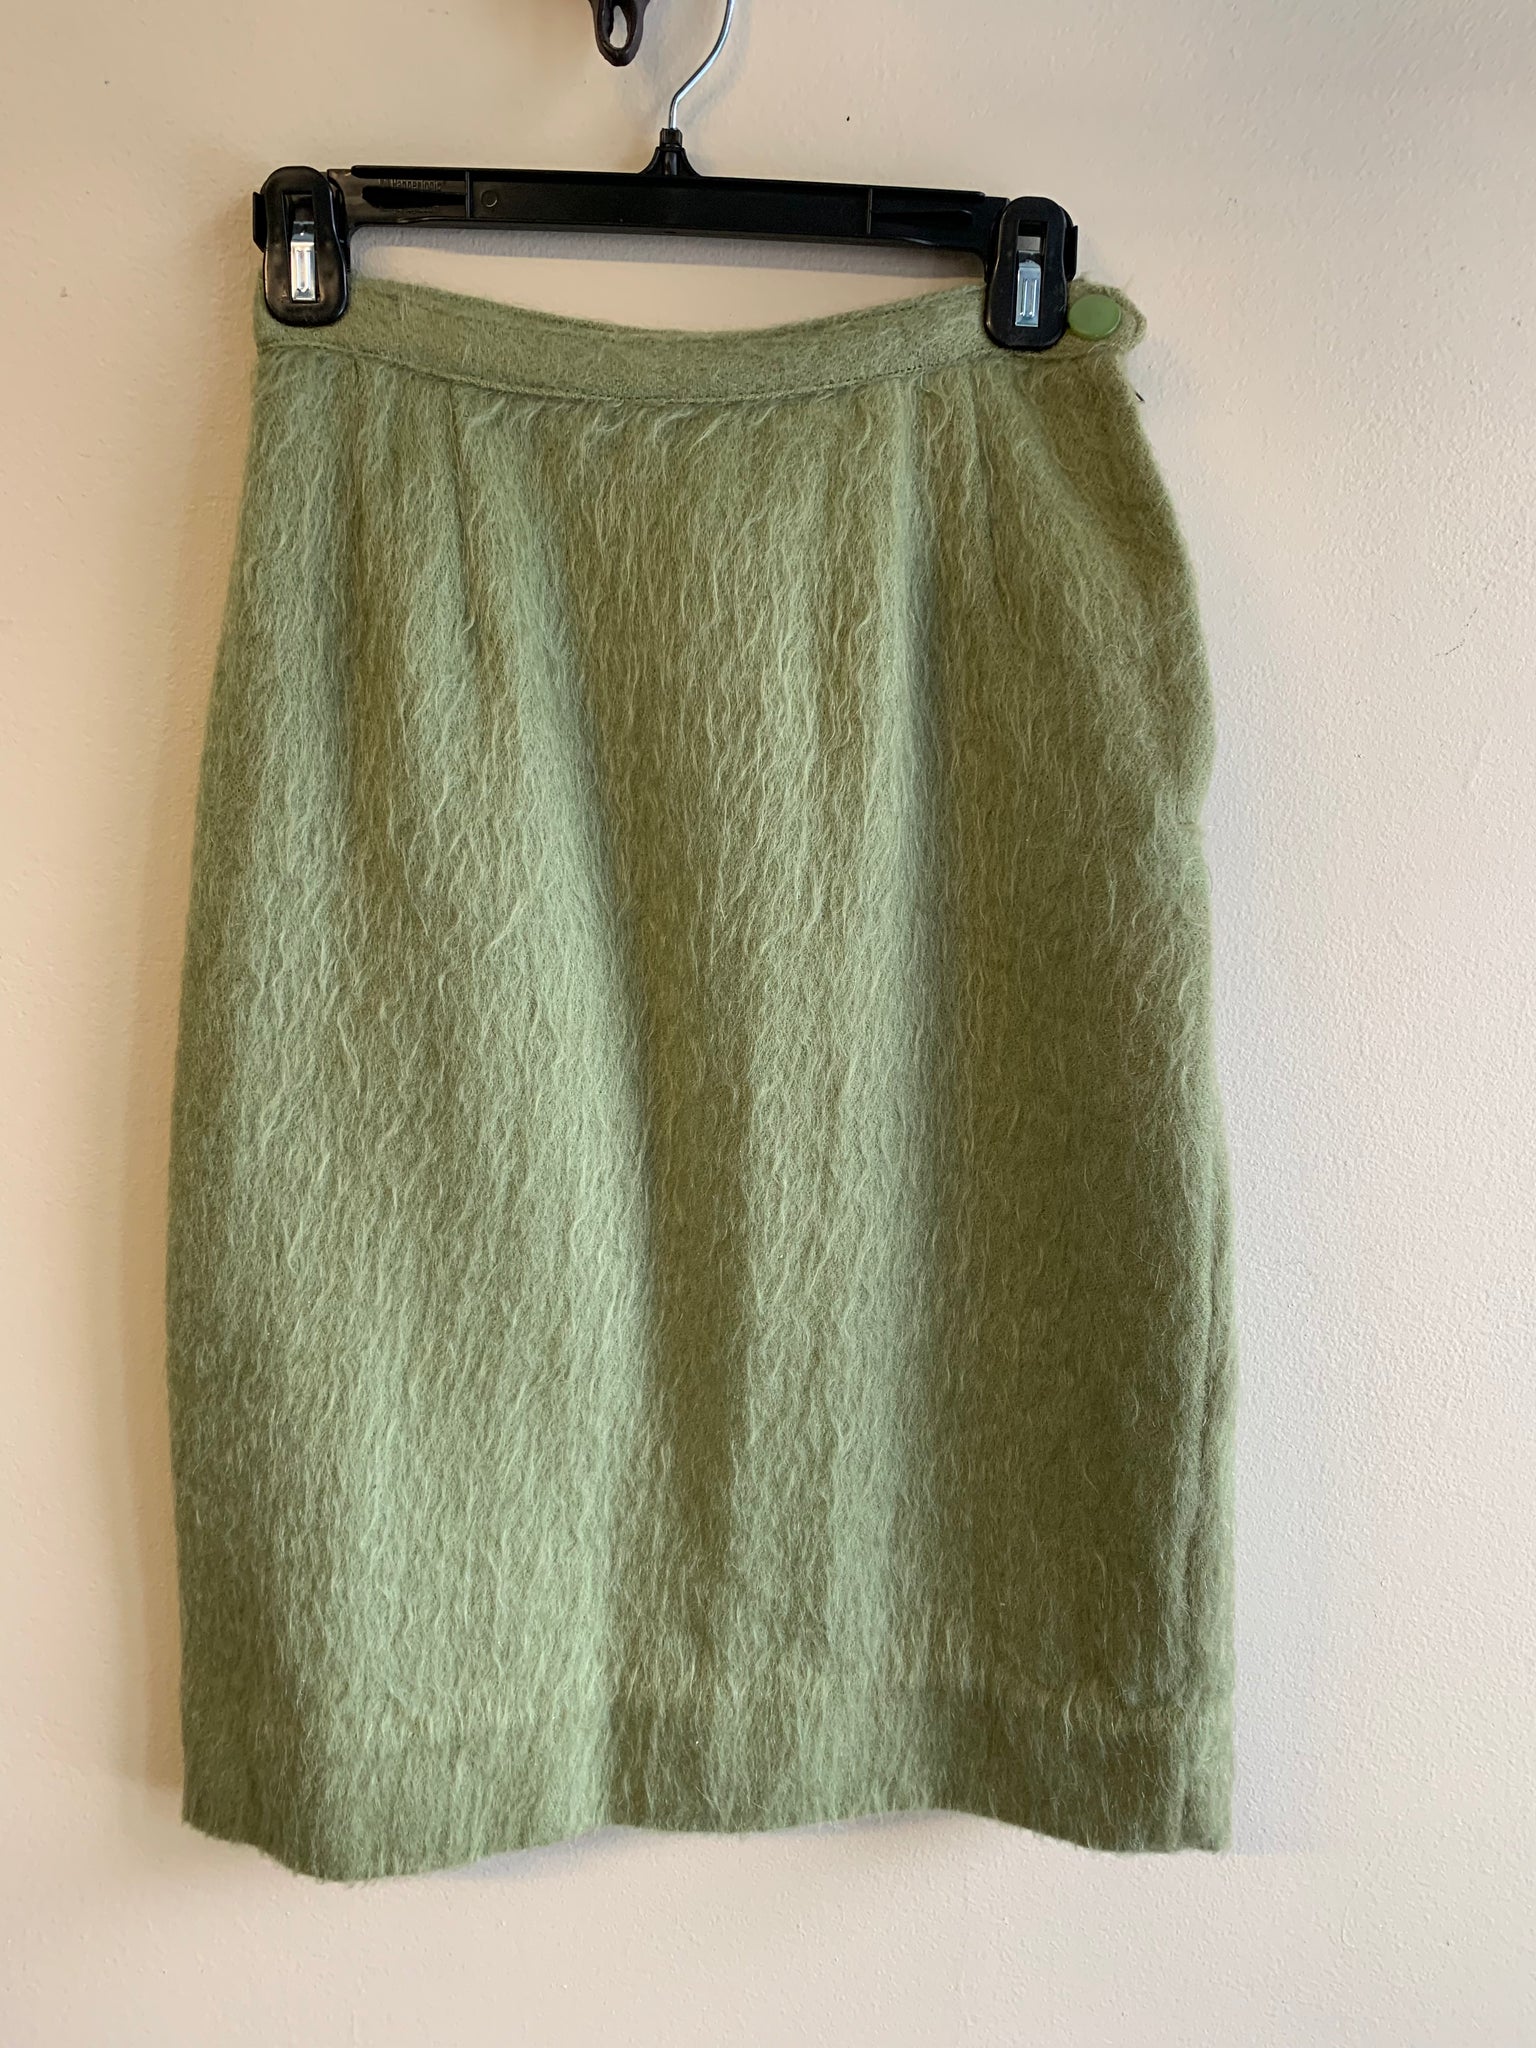 Fuzzy Green Skirt - XS